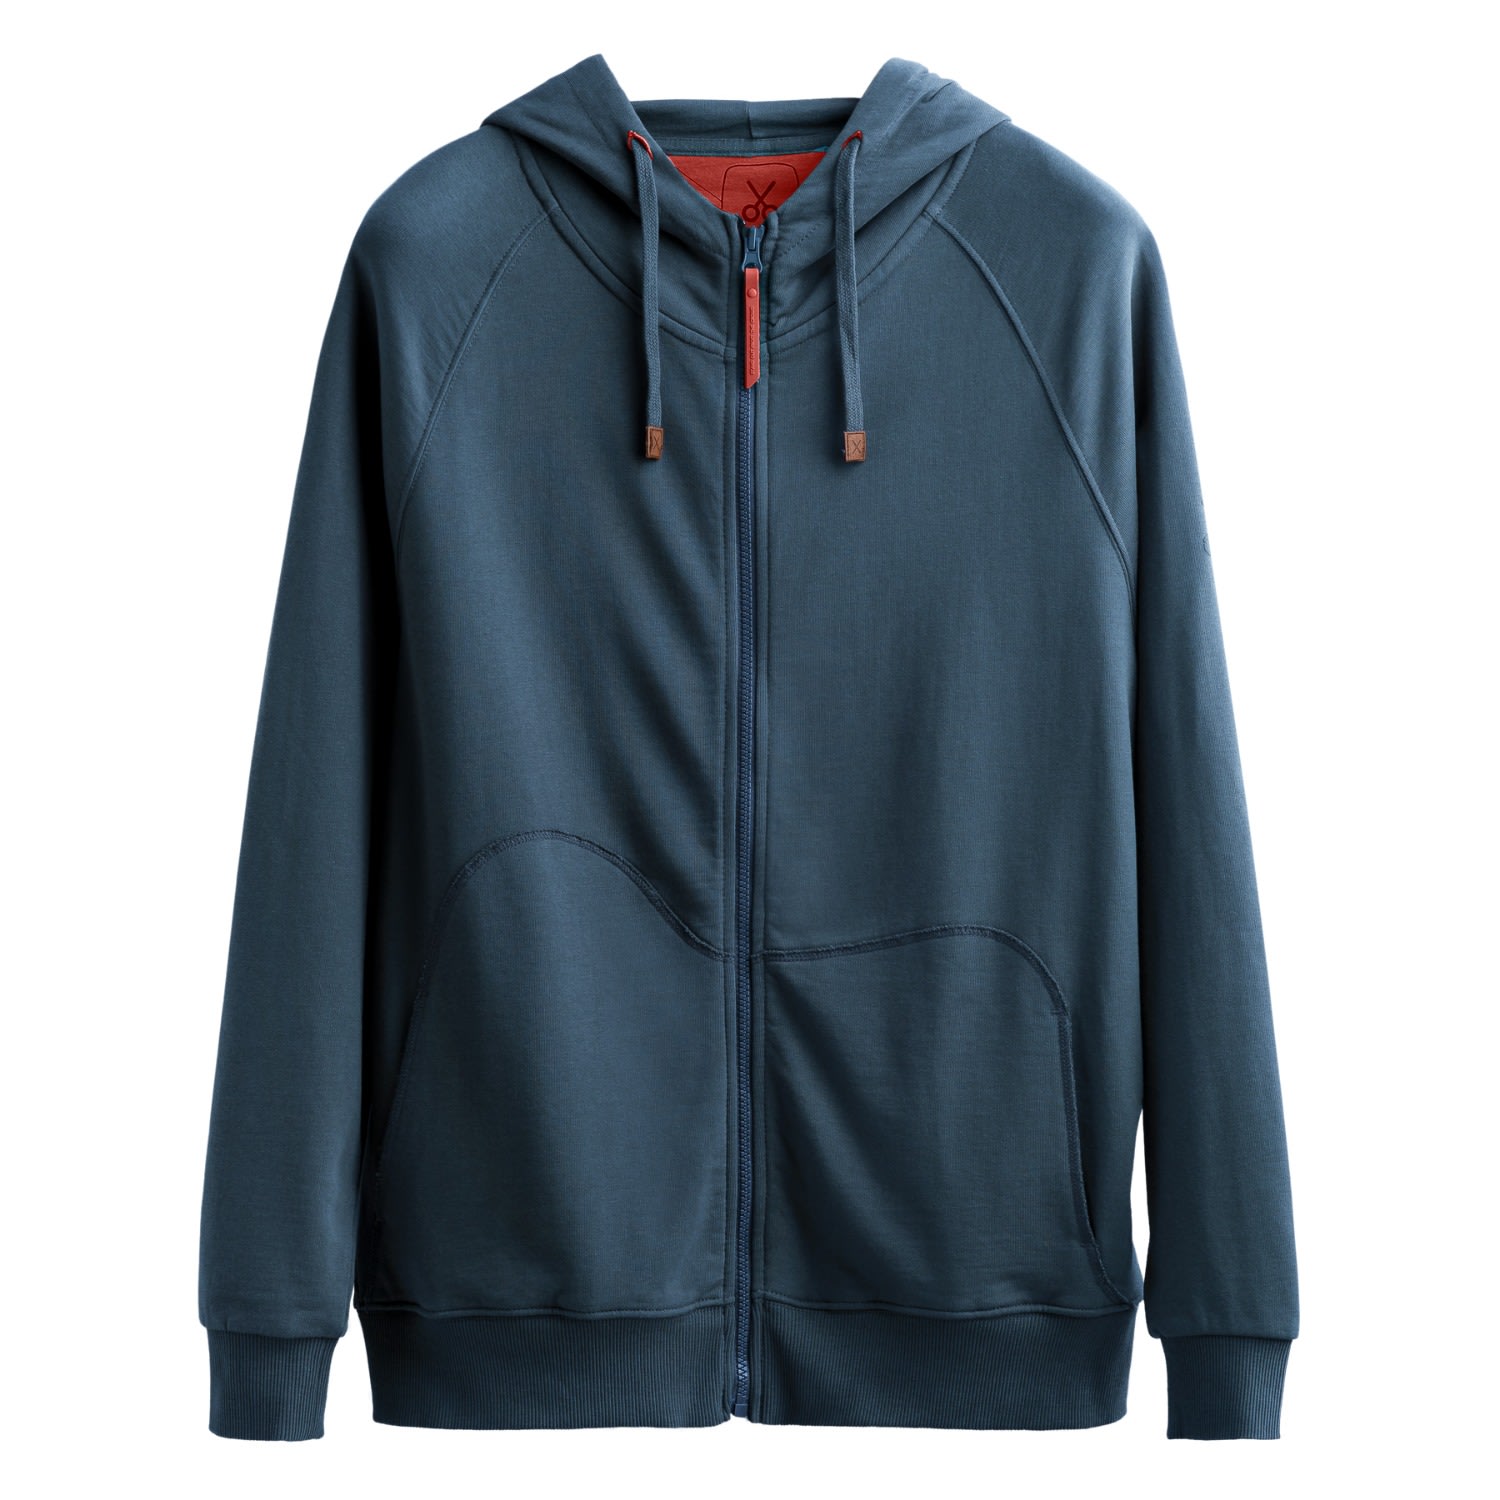 Men's Blue Unisex Design Zip Hoodie Sweatshirt - Zipper - Ocean Extra Small KAFT